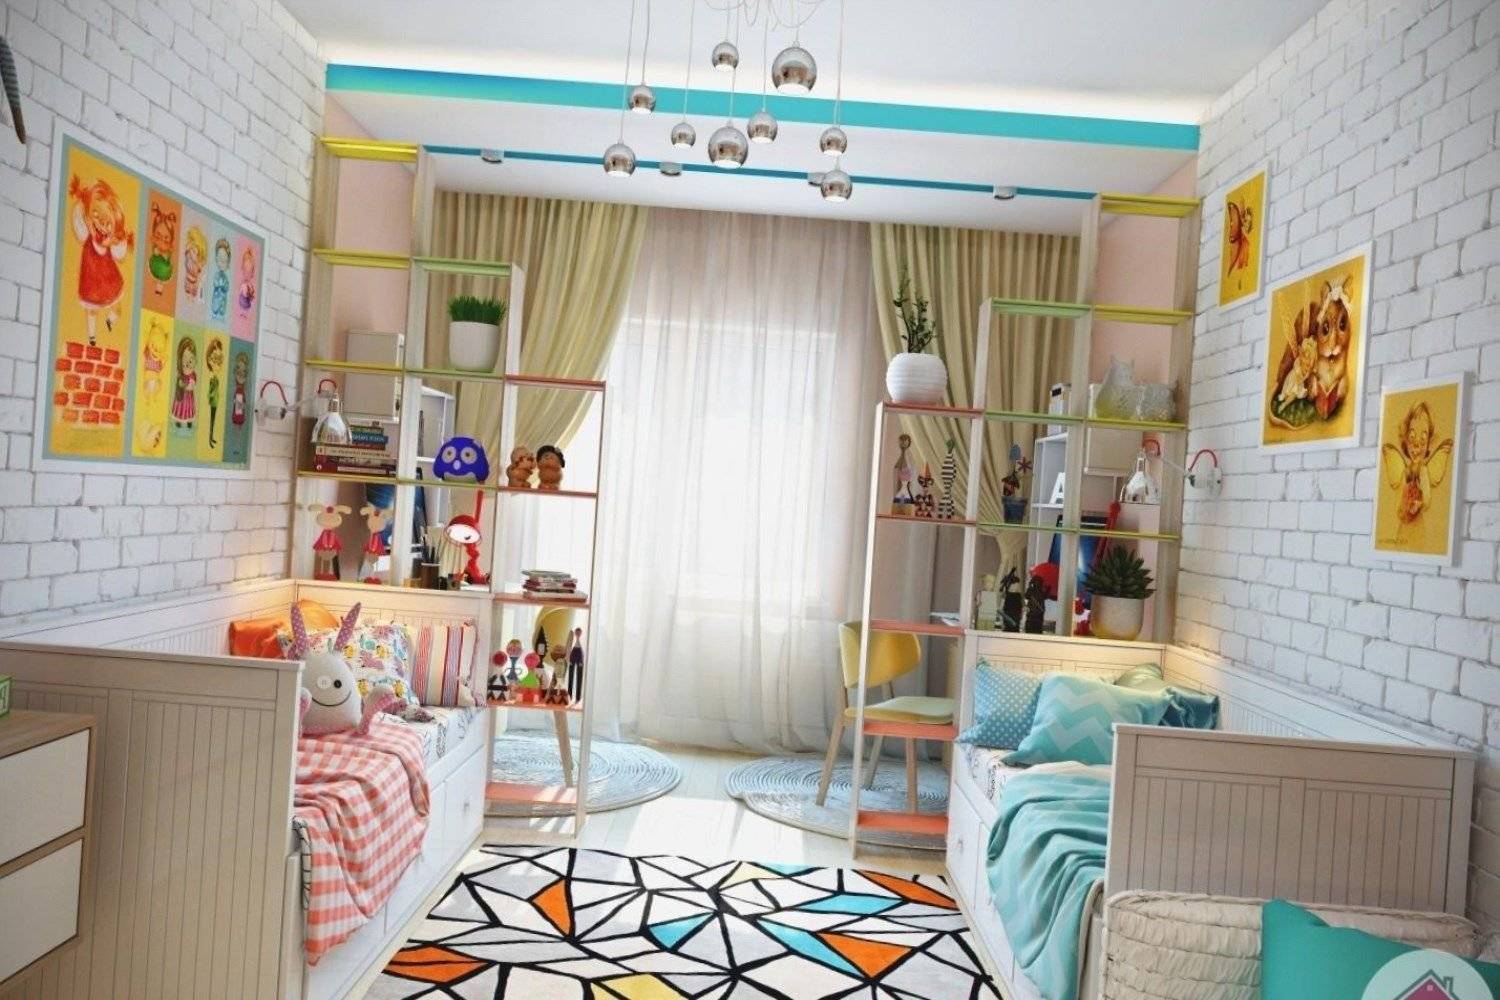 Детская комната для троих детей: 50+ фото в интерьере, идеи дизайна